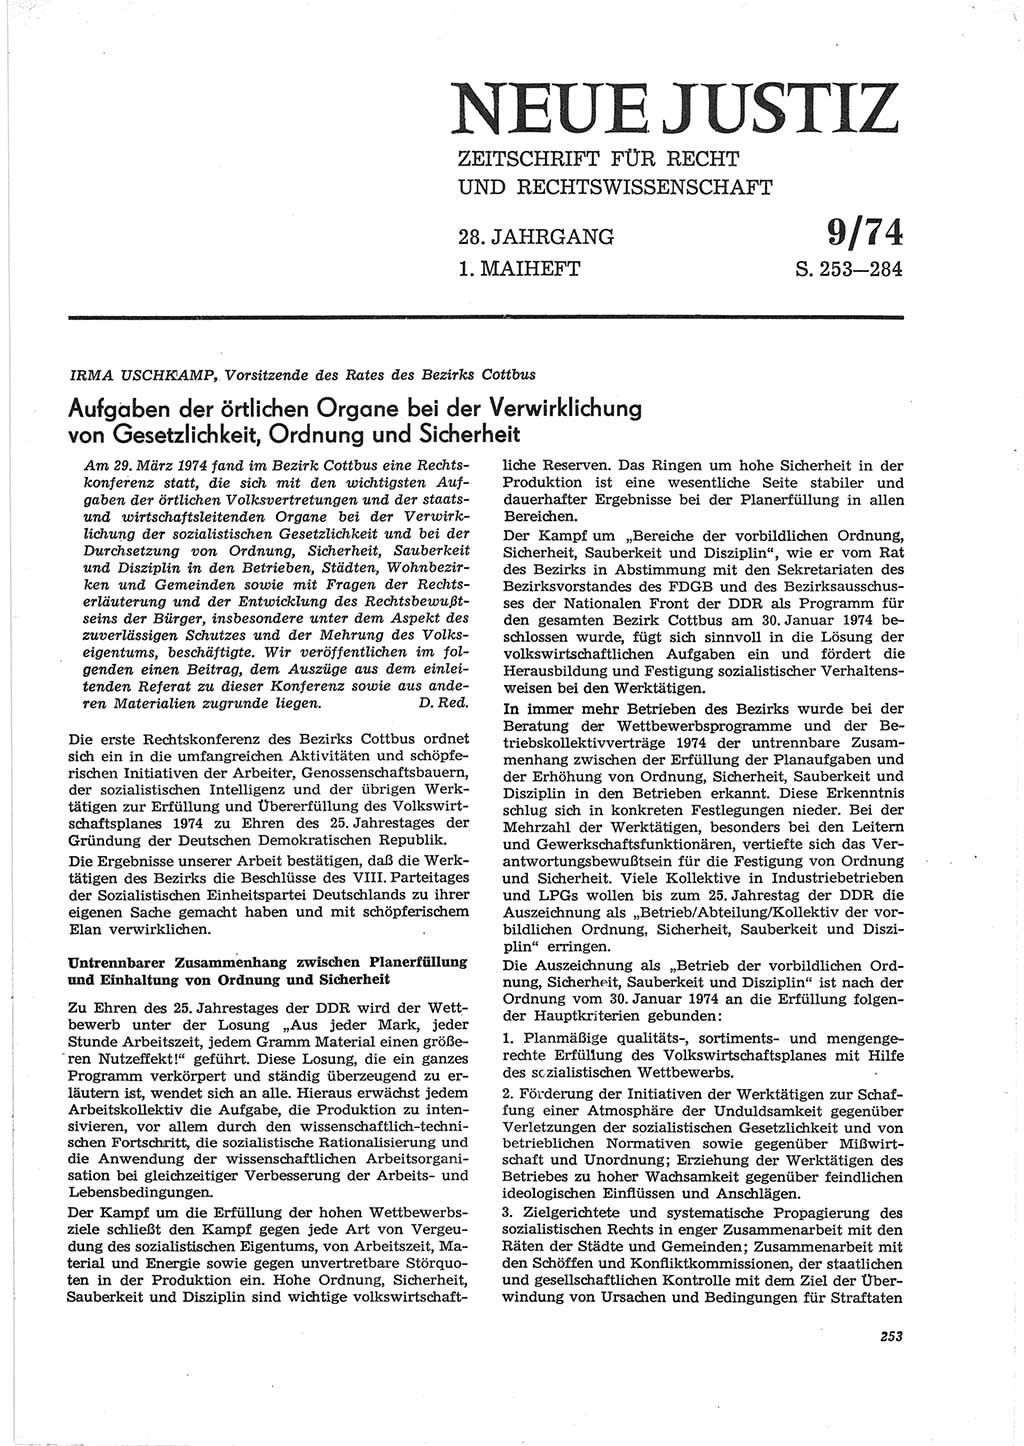 Neue Justiz (NJ), Zeitschrift für Recht und Rechtswissenschaft [Deutsche Demokratische Republik (DDR)], 28. Jahrgang 1974, Seite 253 (NJ DDR 1974, S. 253)